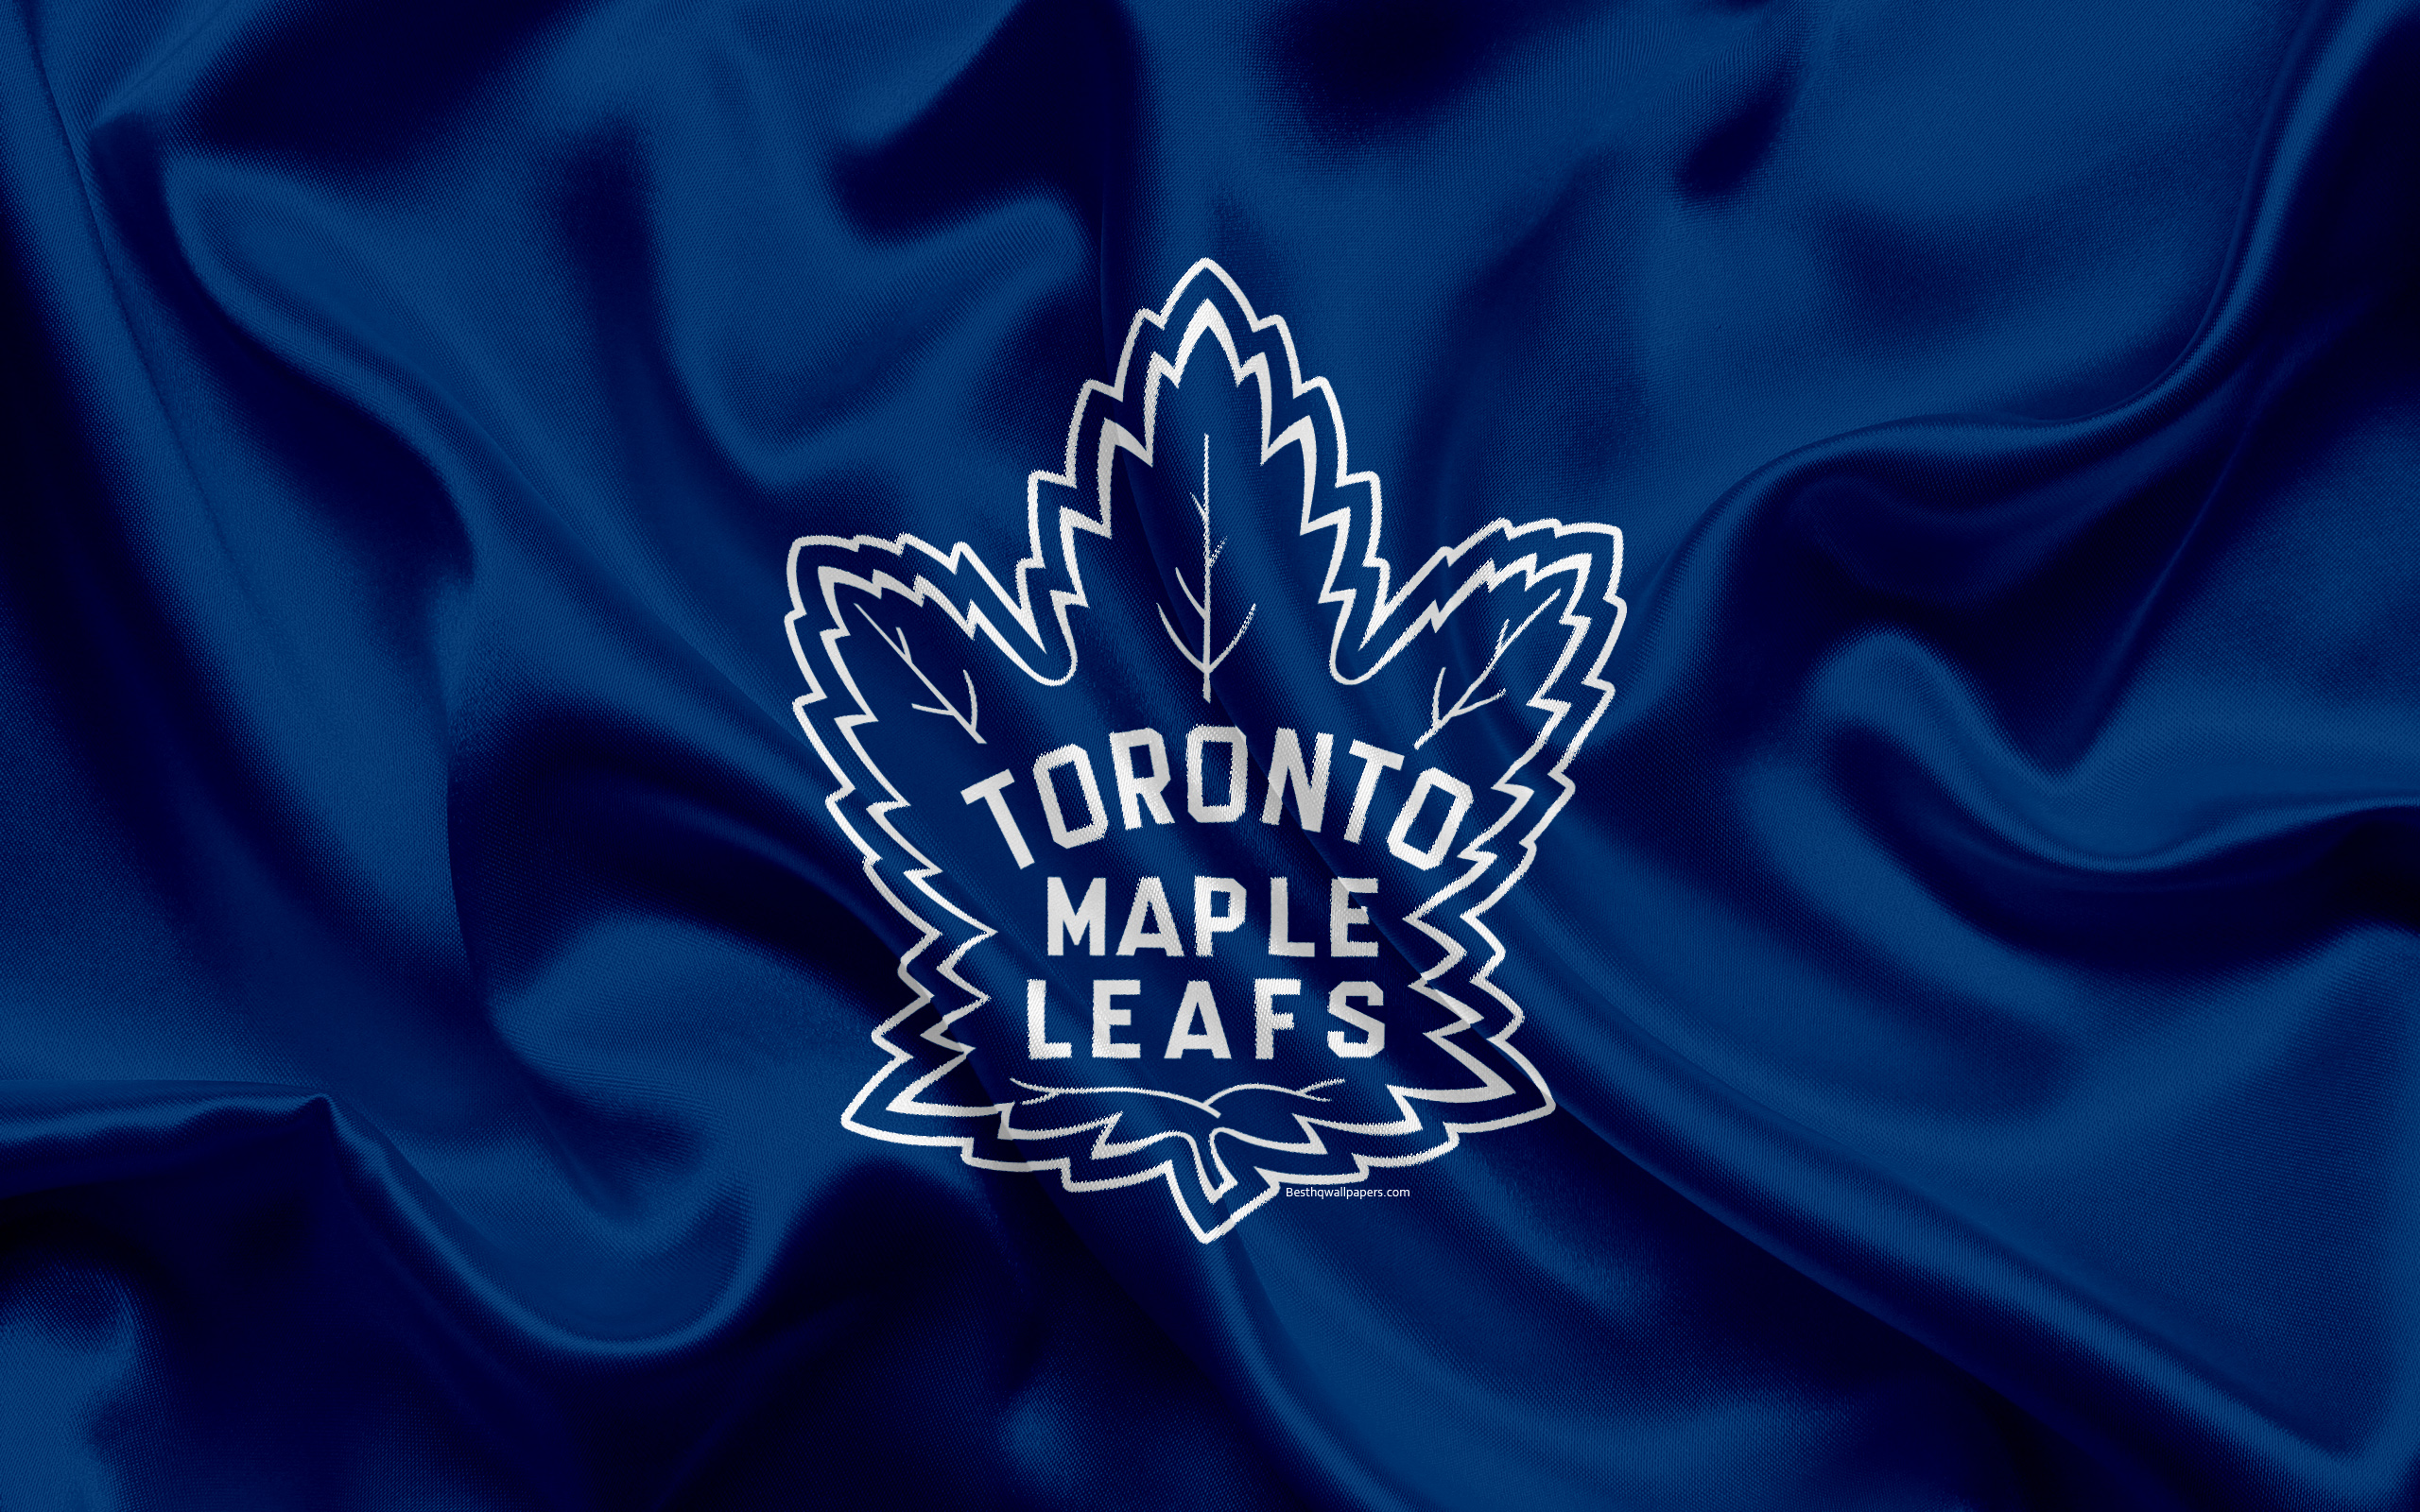 Toronto Maple Leafs, Hockey Club, Nhl, Emblem, Logo, - Toronto Maple Leafs Nhl Logo , HD Wallpaper & Backgrounds